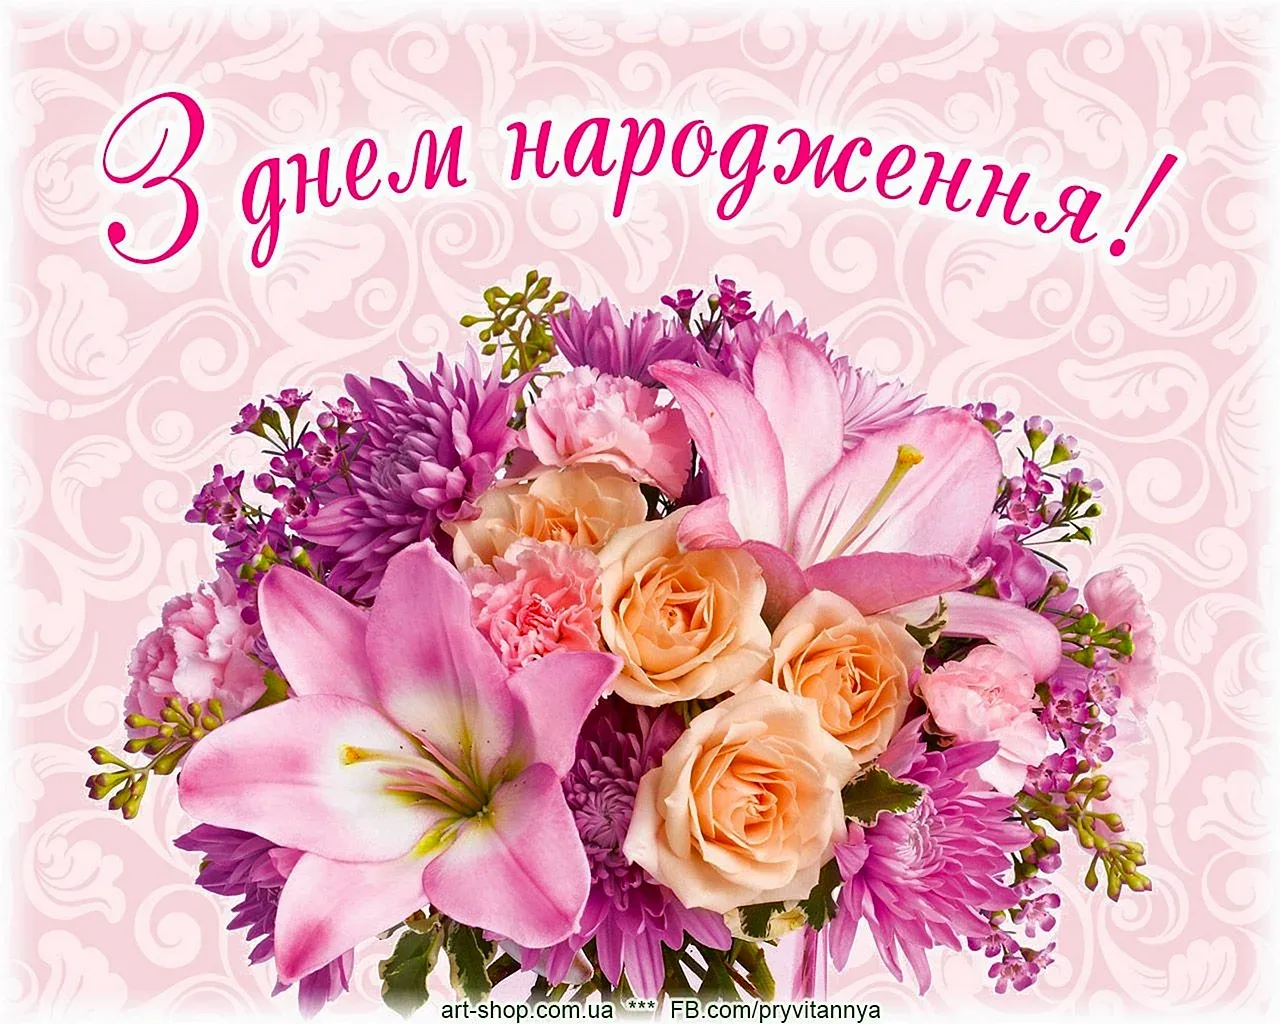 Фото Привітання з днем народження на українській мові #28